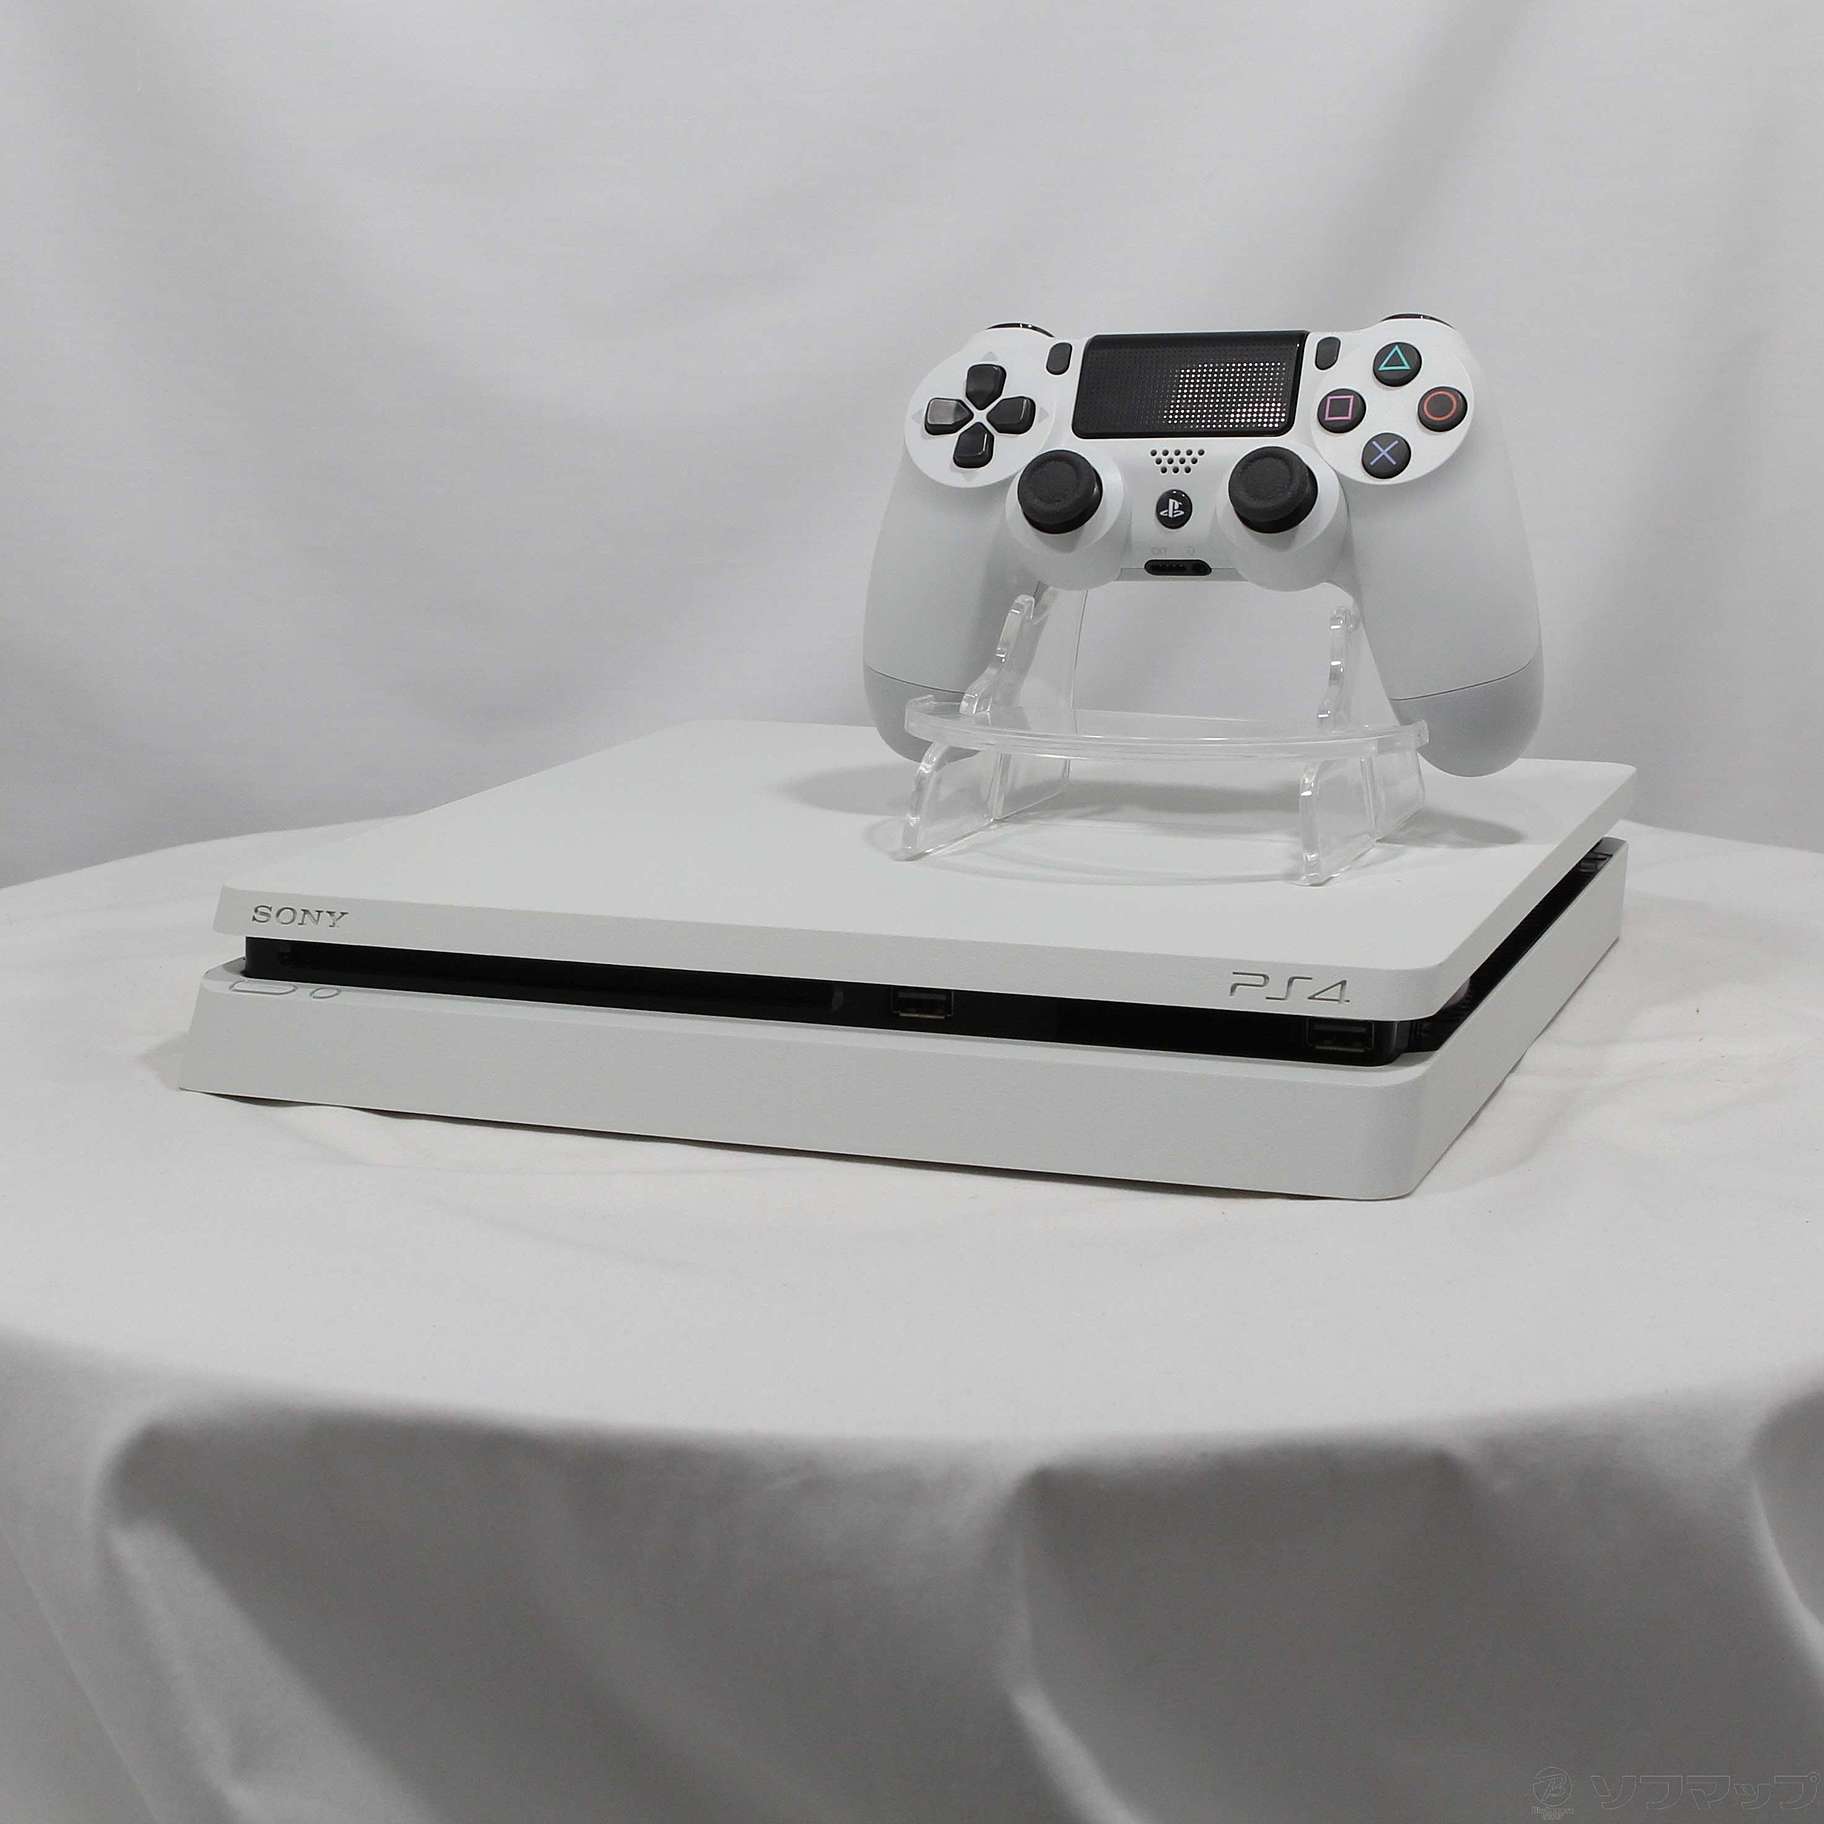 中古】PlayStation 4 グレイシャー・ホワイト 1TB CUH-2200BB02